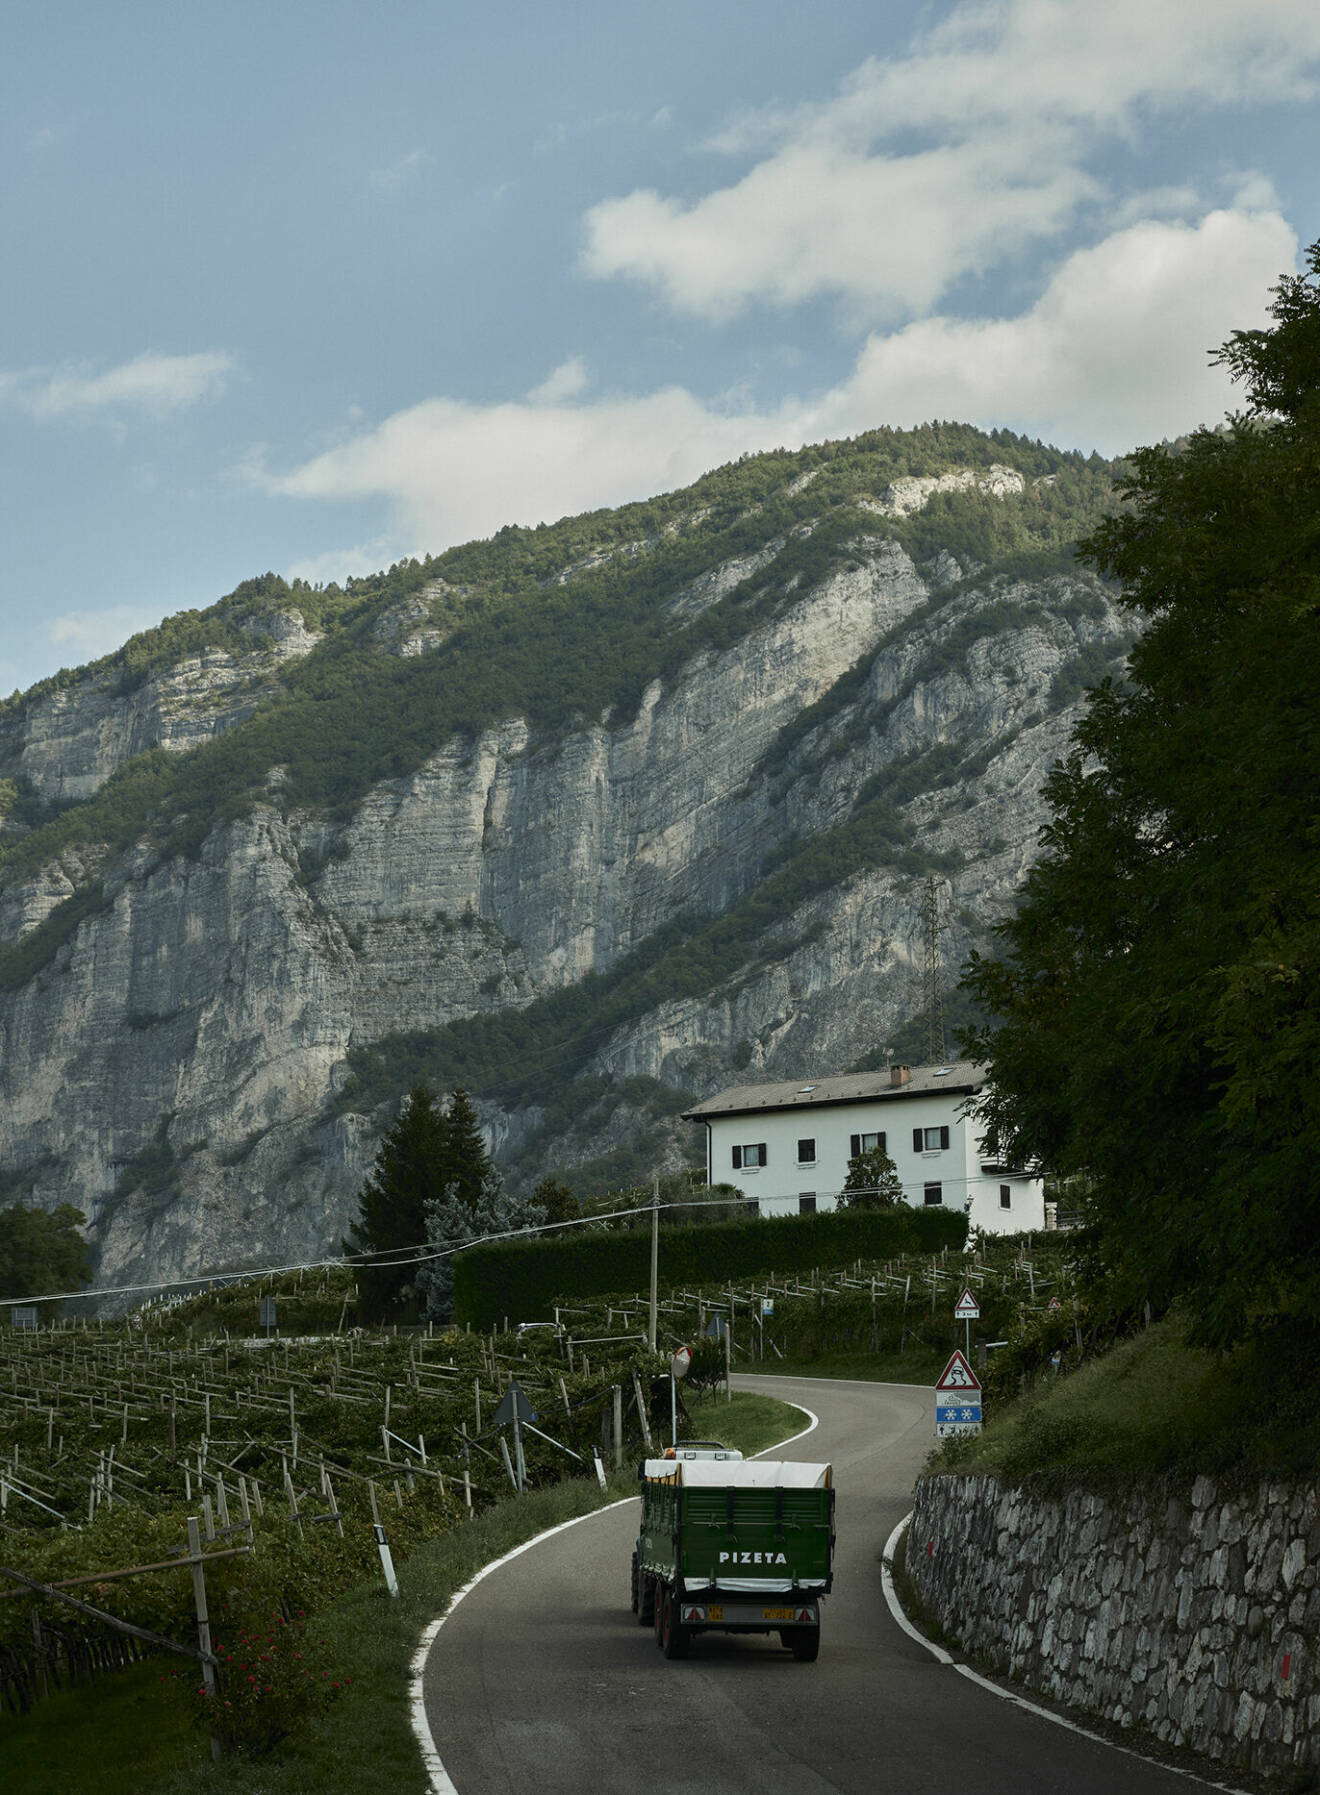 Trentino är regionen, belägen i nordöstra Italien – och tack vare ultimata förhållanden vad gäller växtplats och klimat så lyckas man här göra bubblor i världsklass.